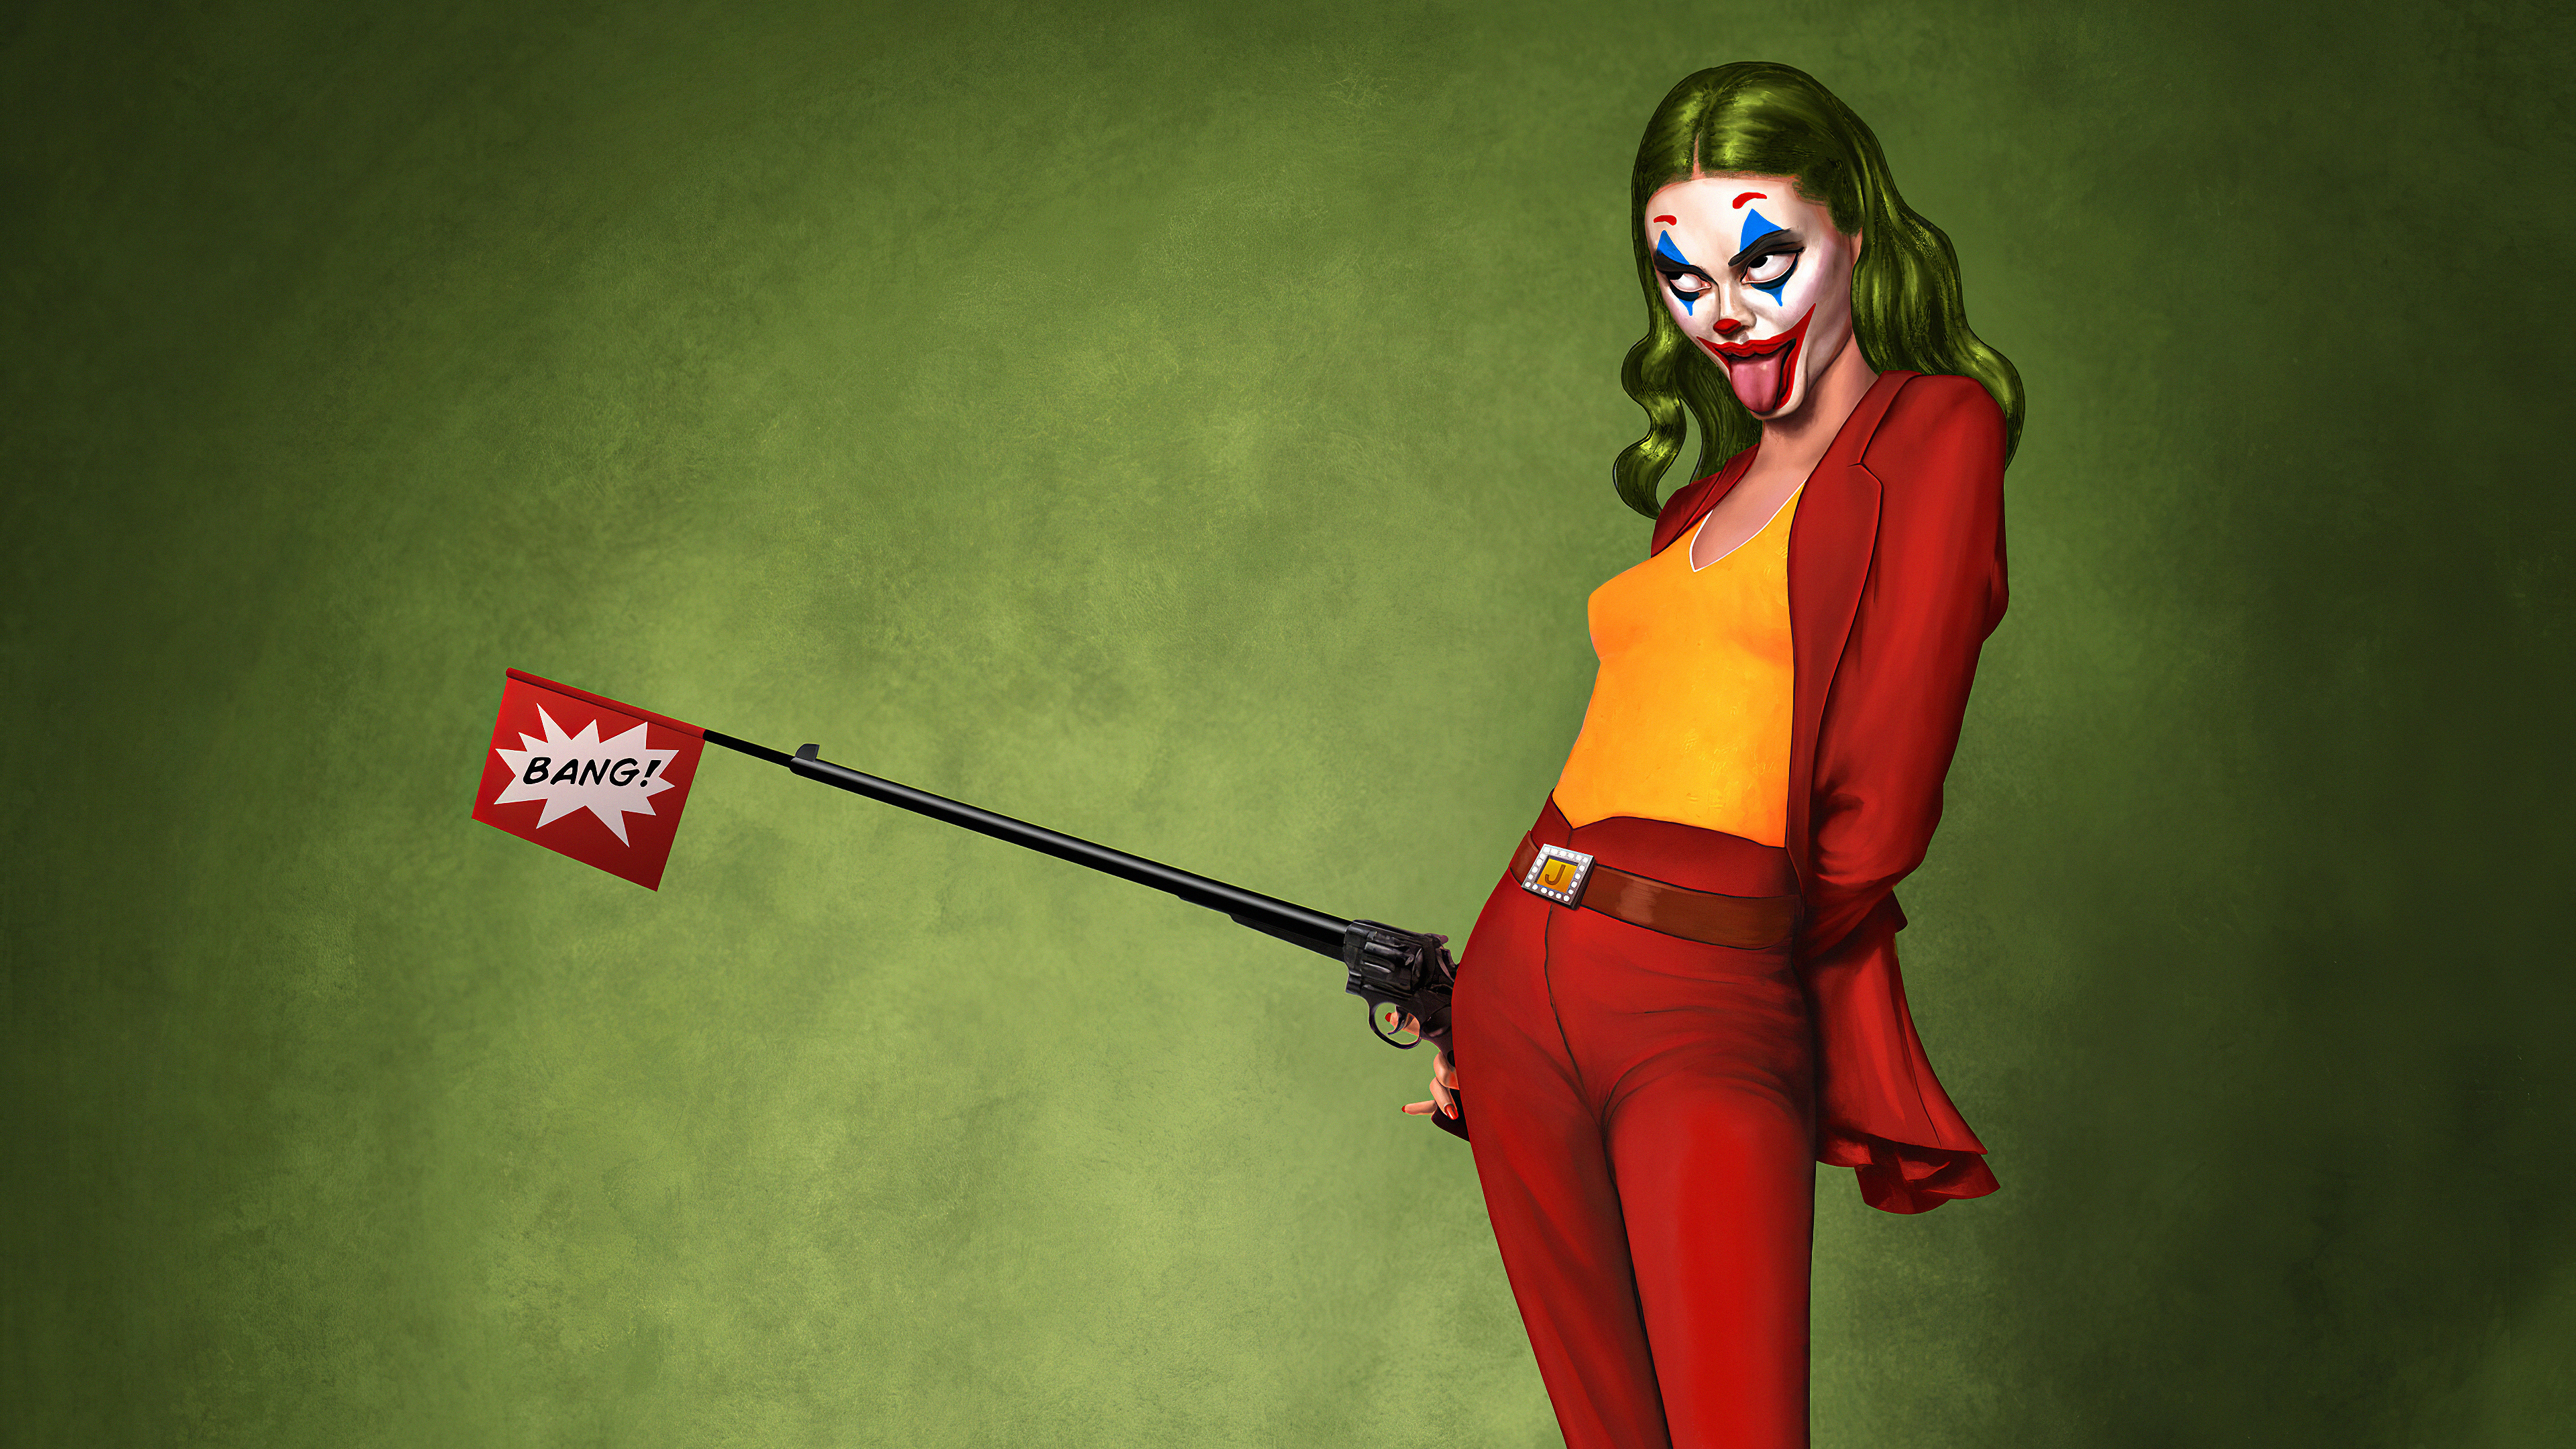 Lady Joker Art - Lady Joker - HD Wallpaper 